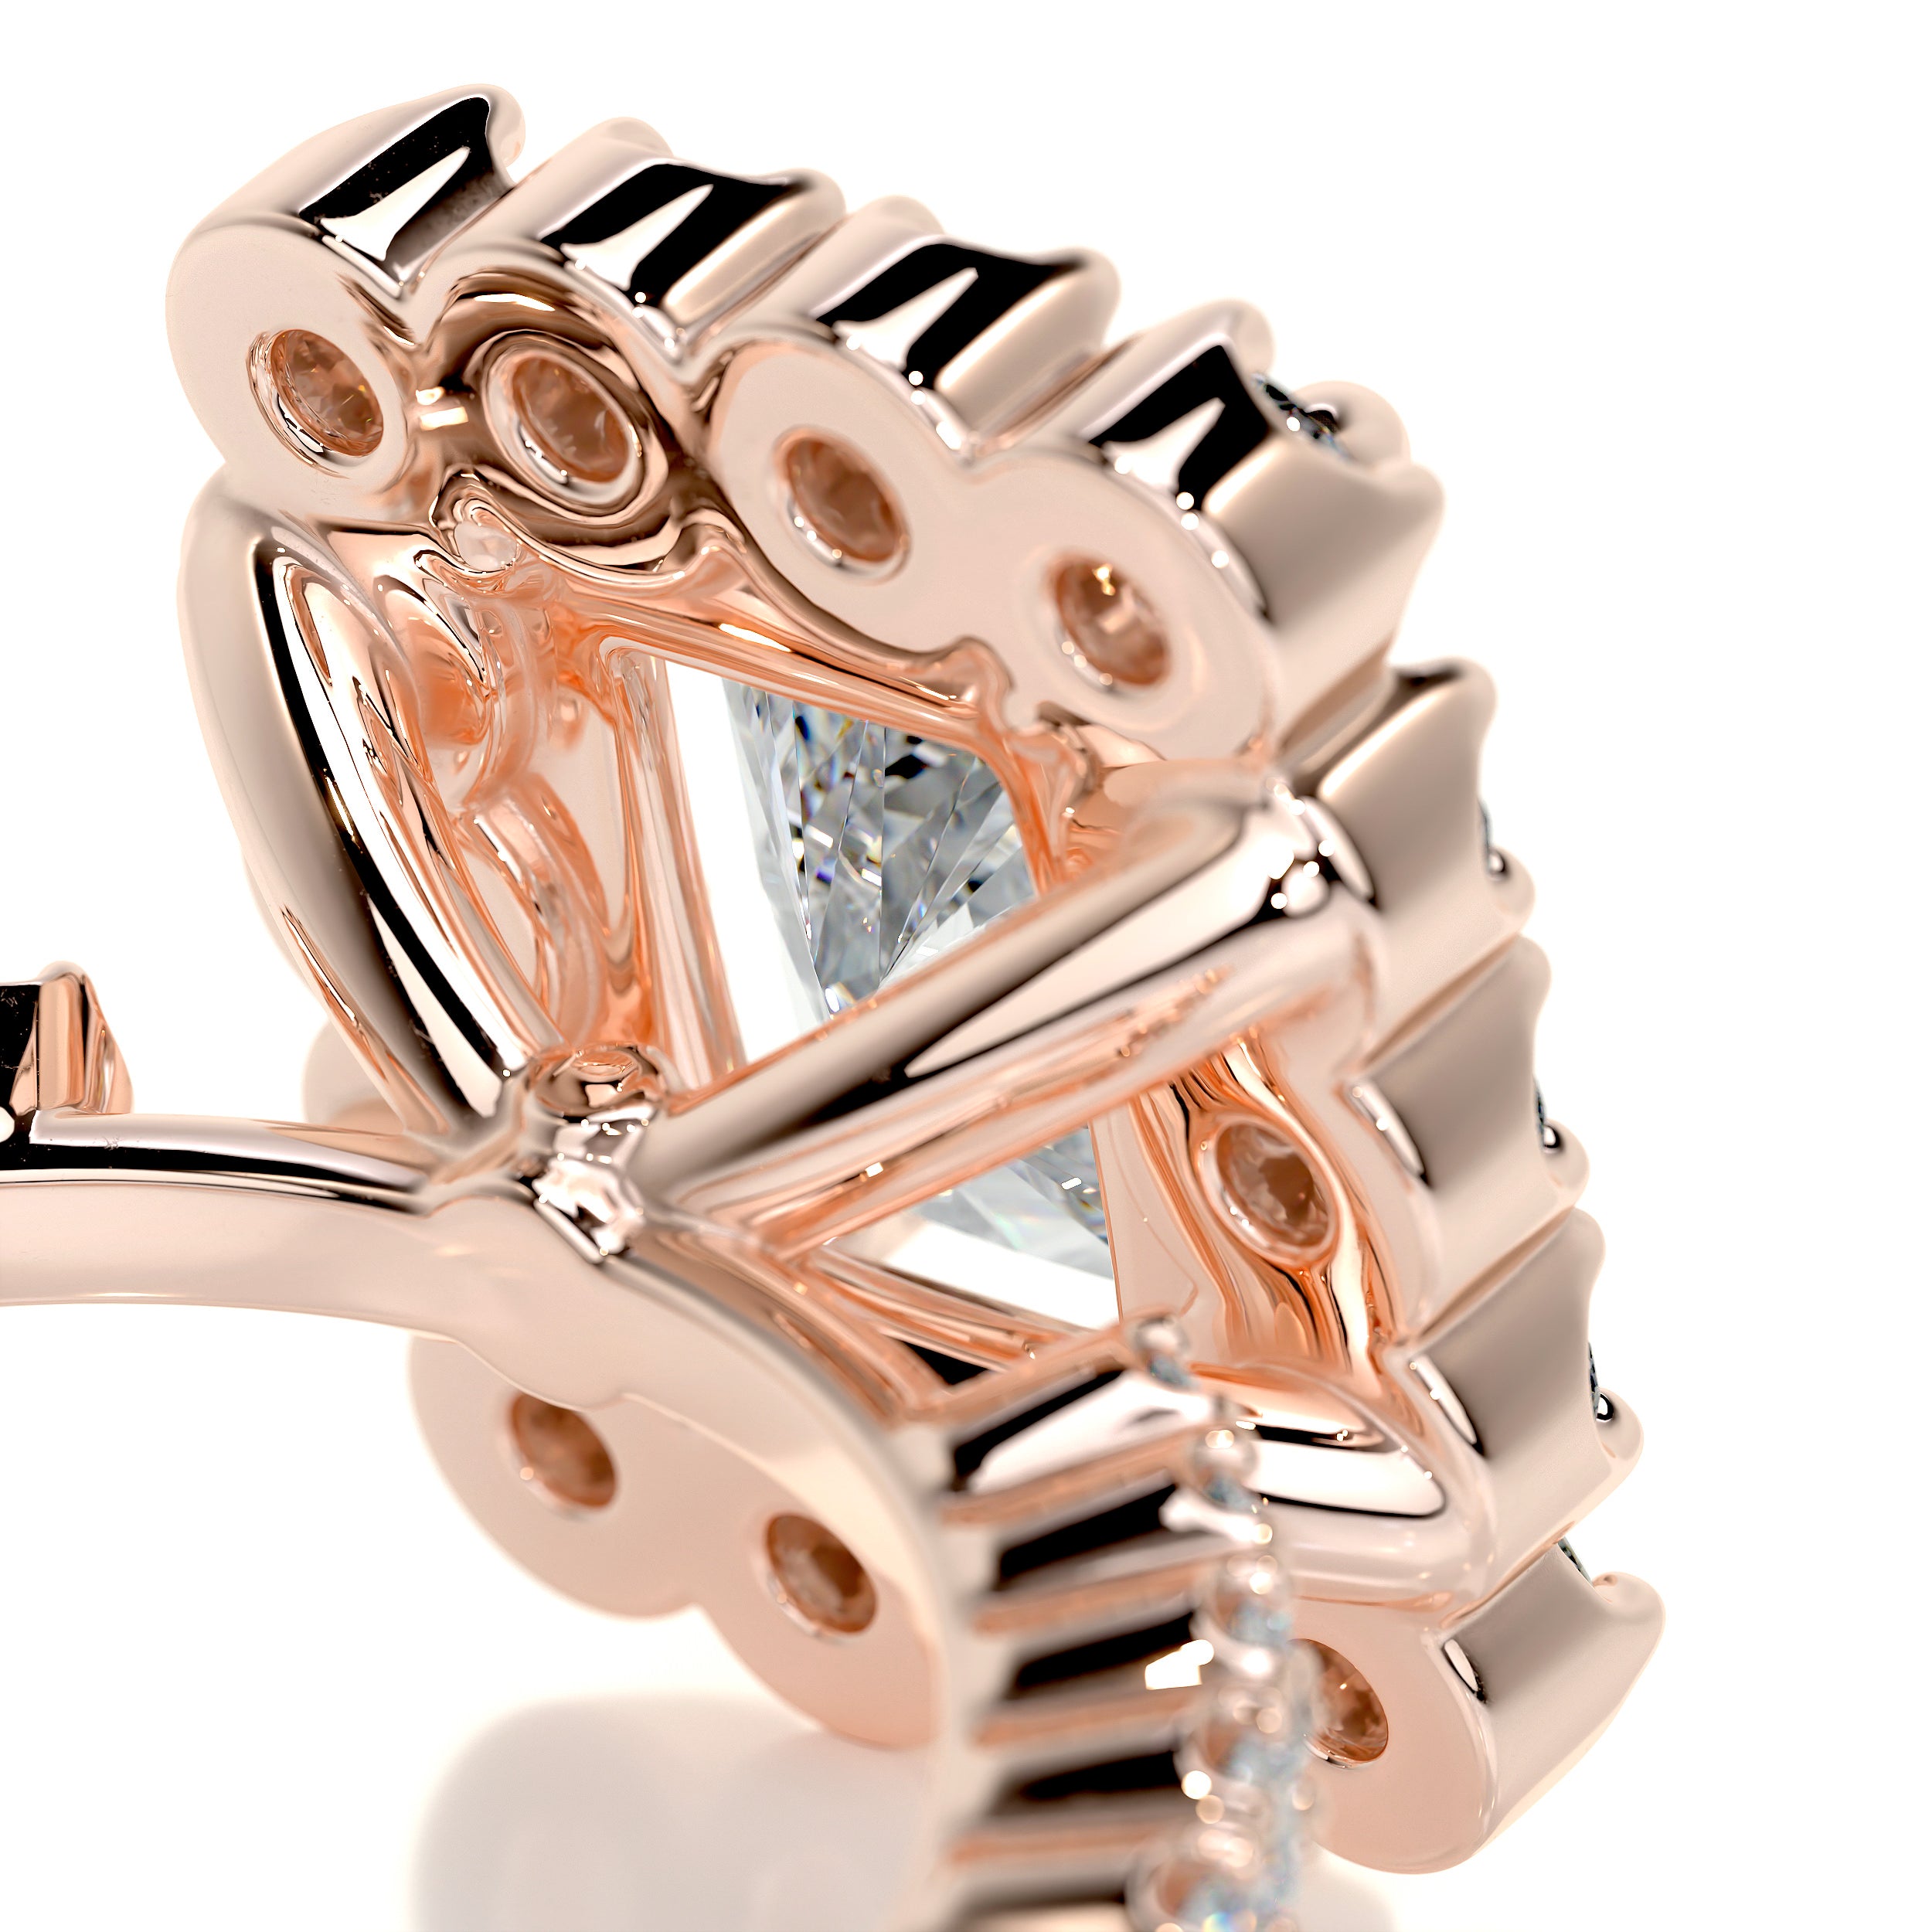 Abby Moissanite & Diamonds Ring   (2.5 Carat) -14K Rose Gold